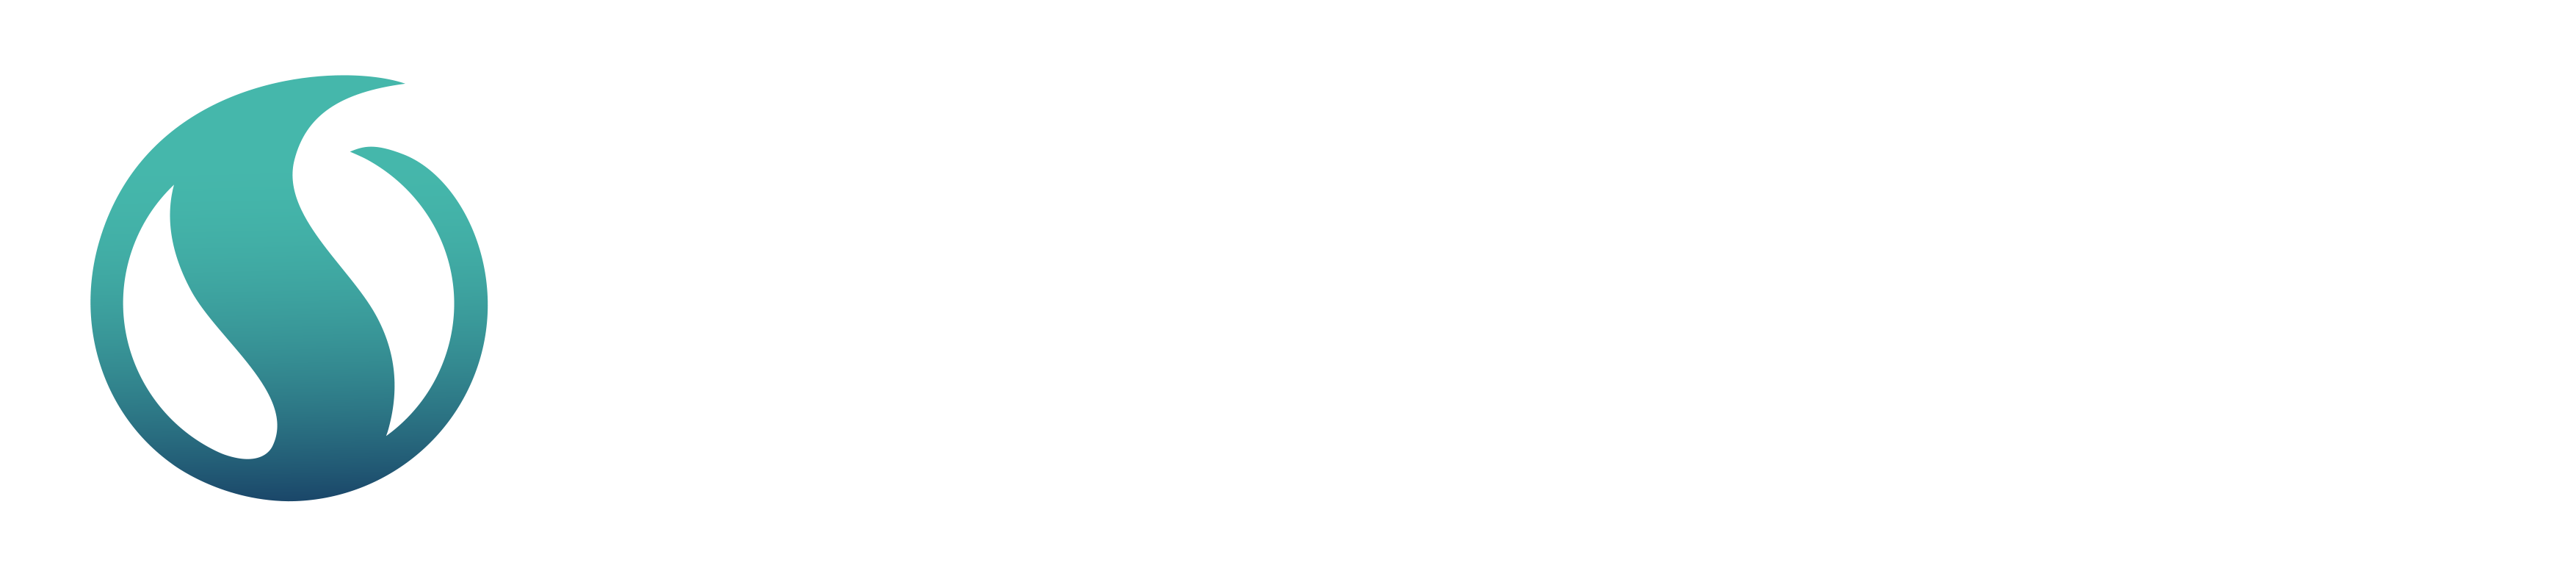 Serwent logo